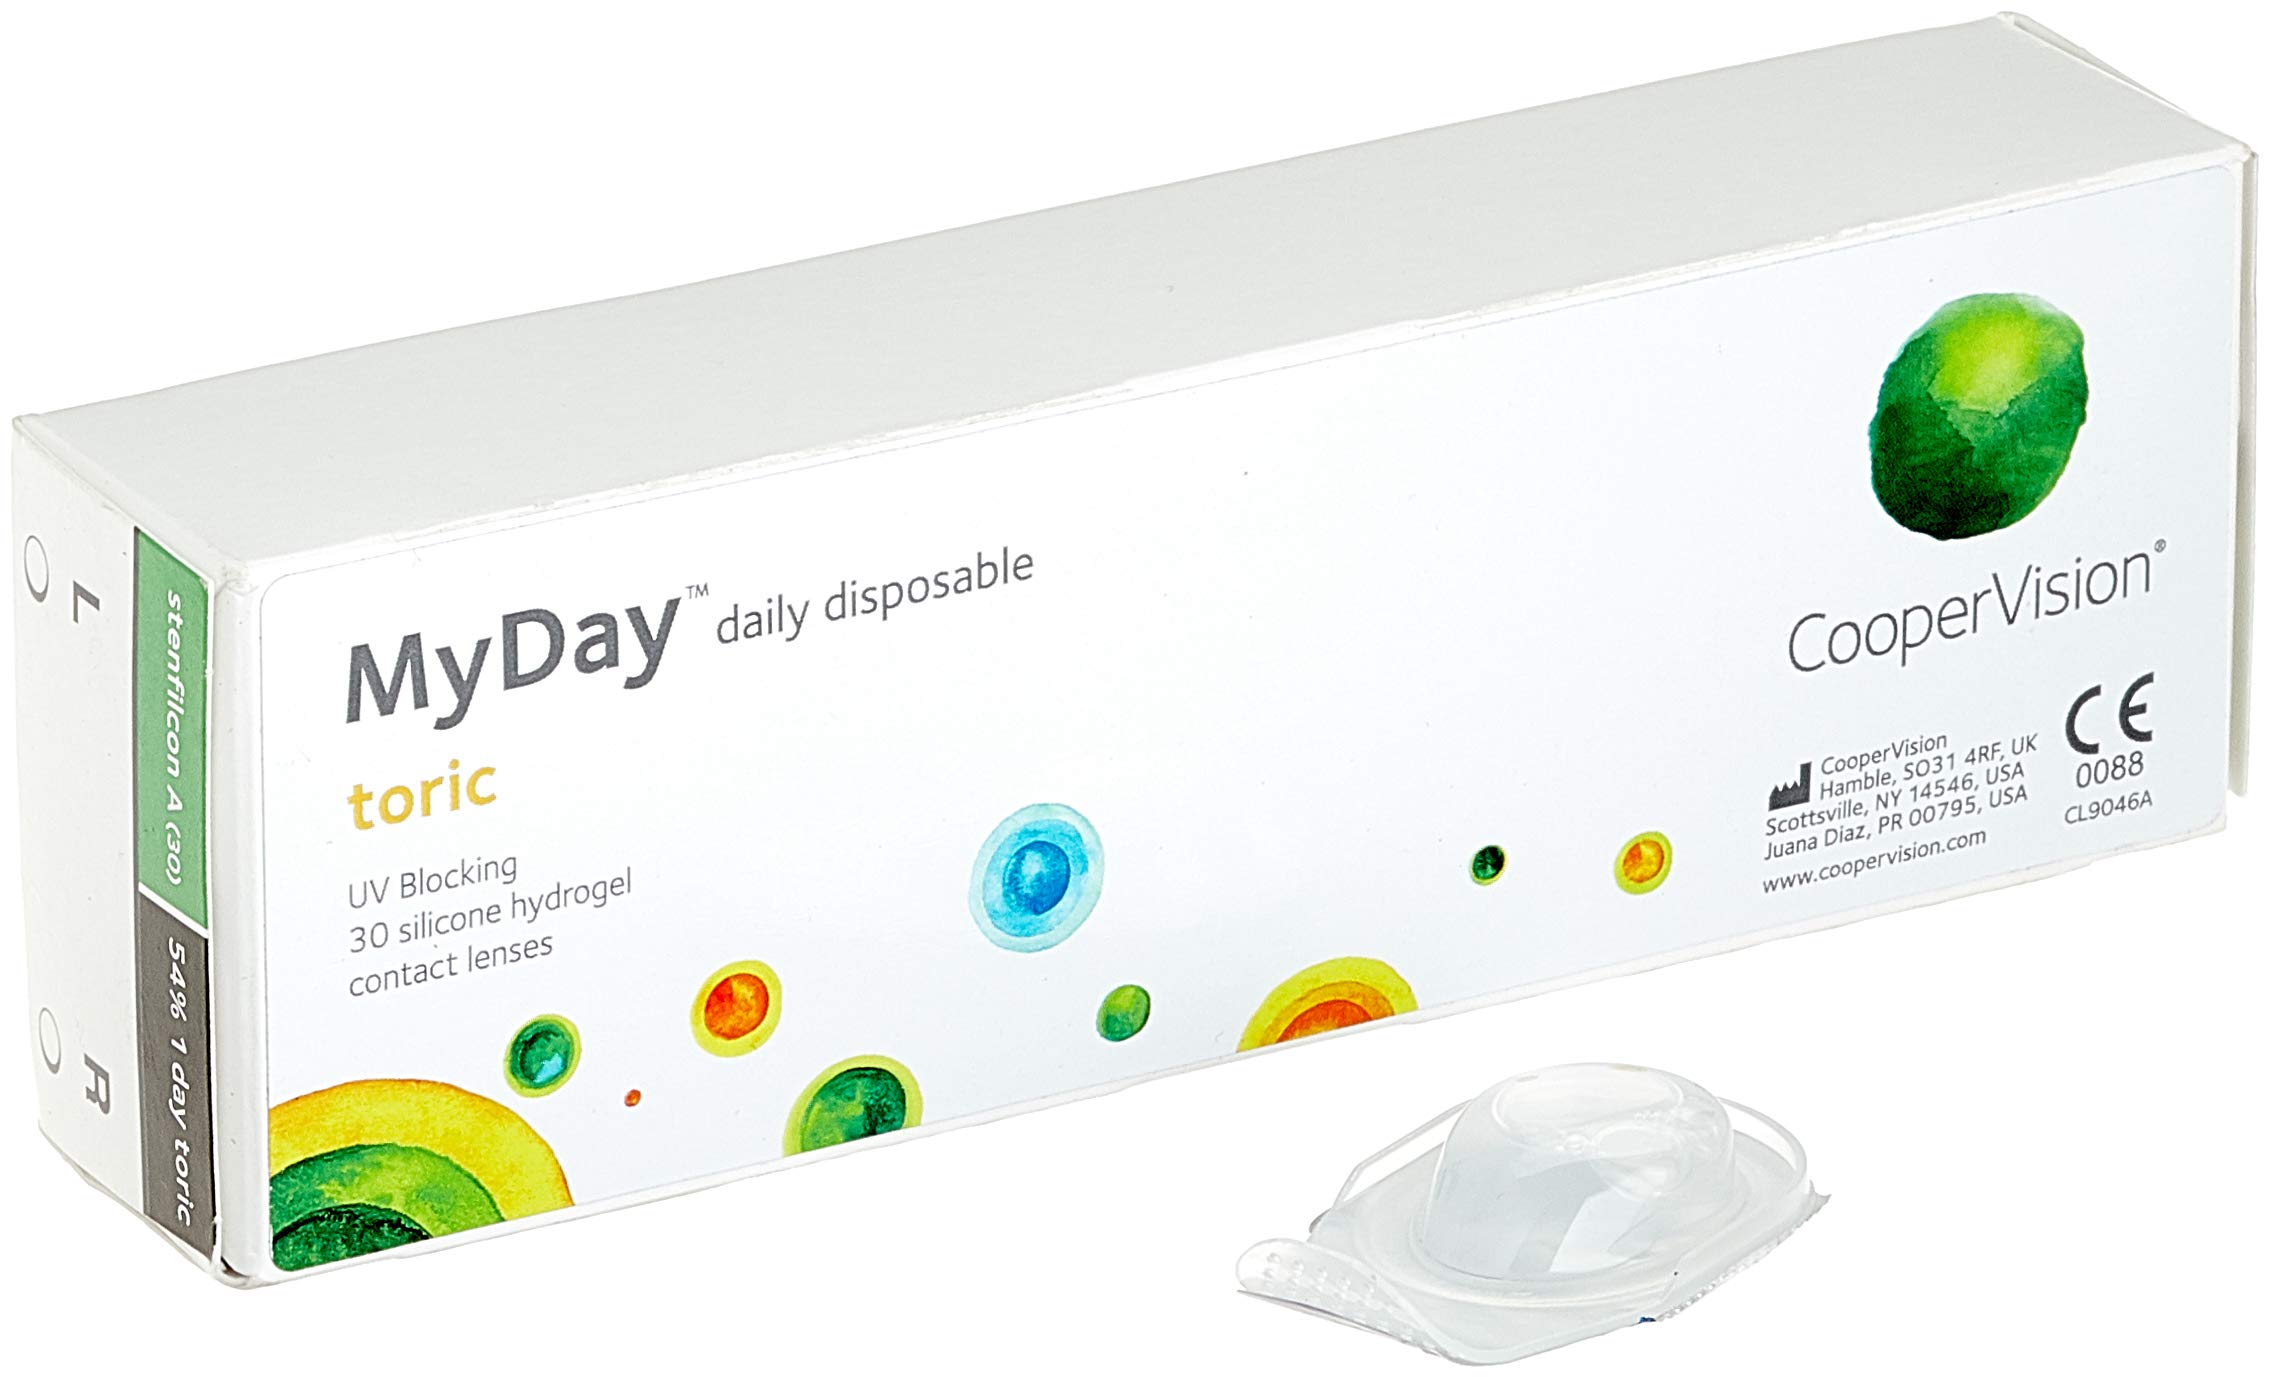 MYDAY Daily disposable Torisch Tageslinsen weich, 30 Stück / BC 8.6 mm / Dia 14.5 mm / CYL -1,75 / ACHSE 100 / -4.75 Dioptrien